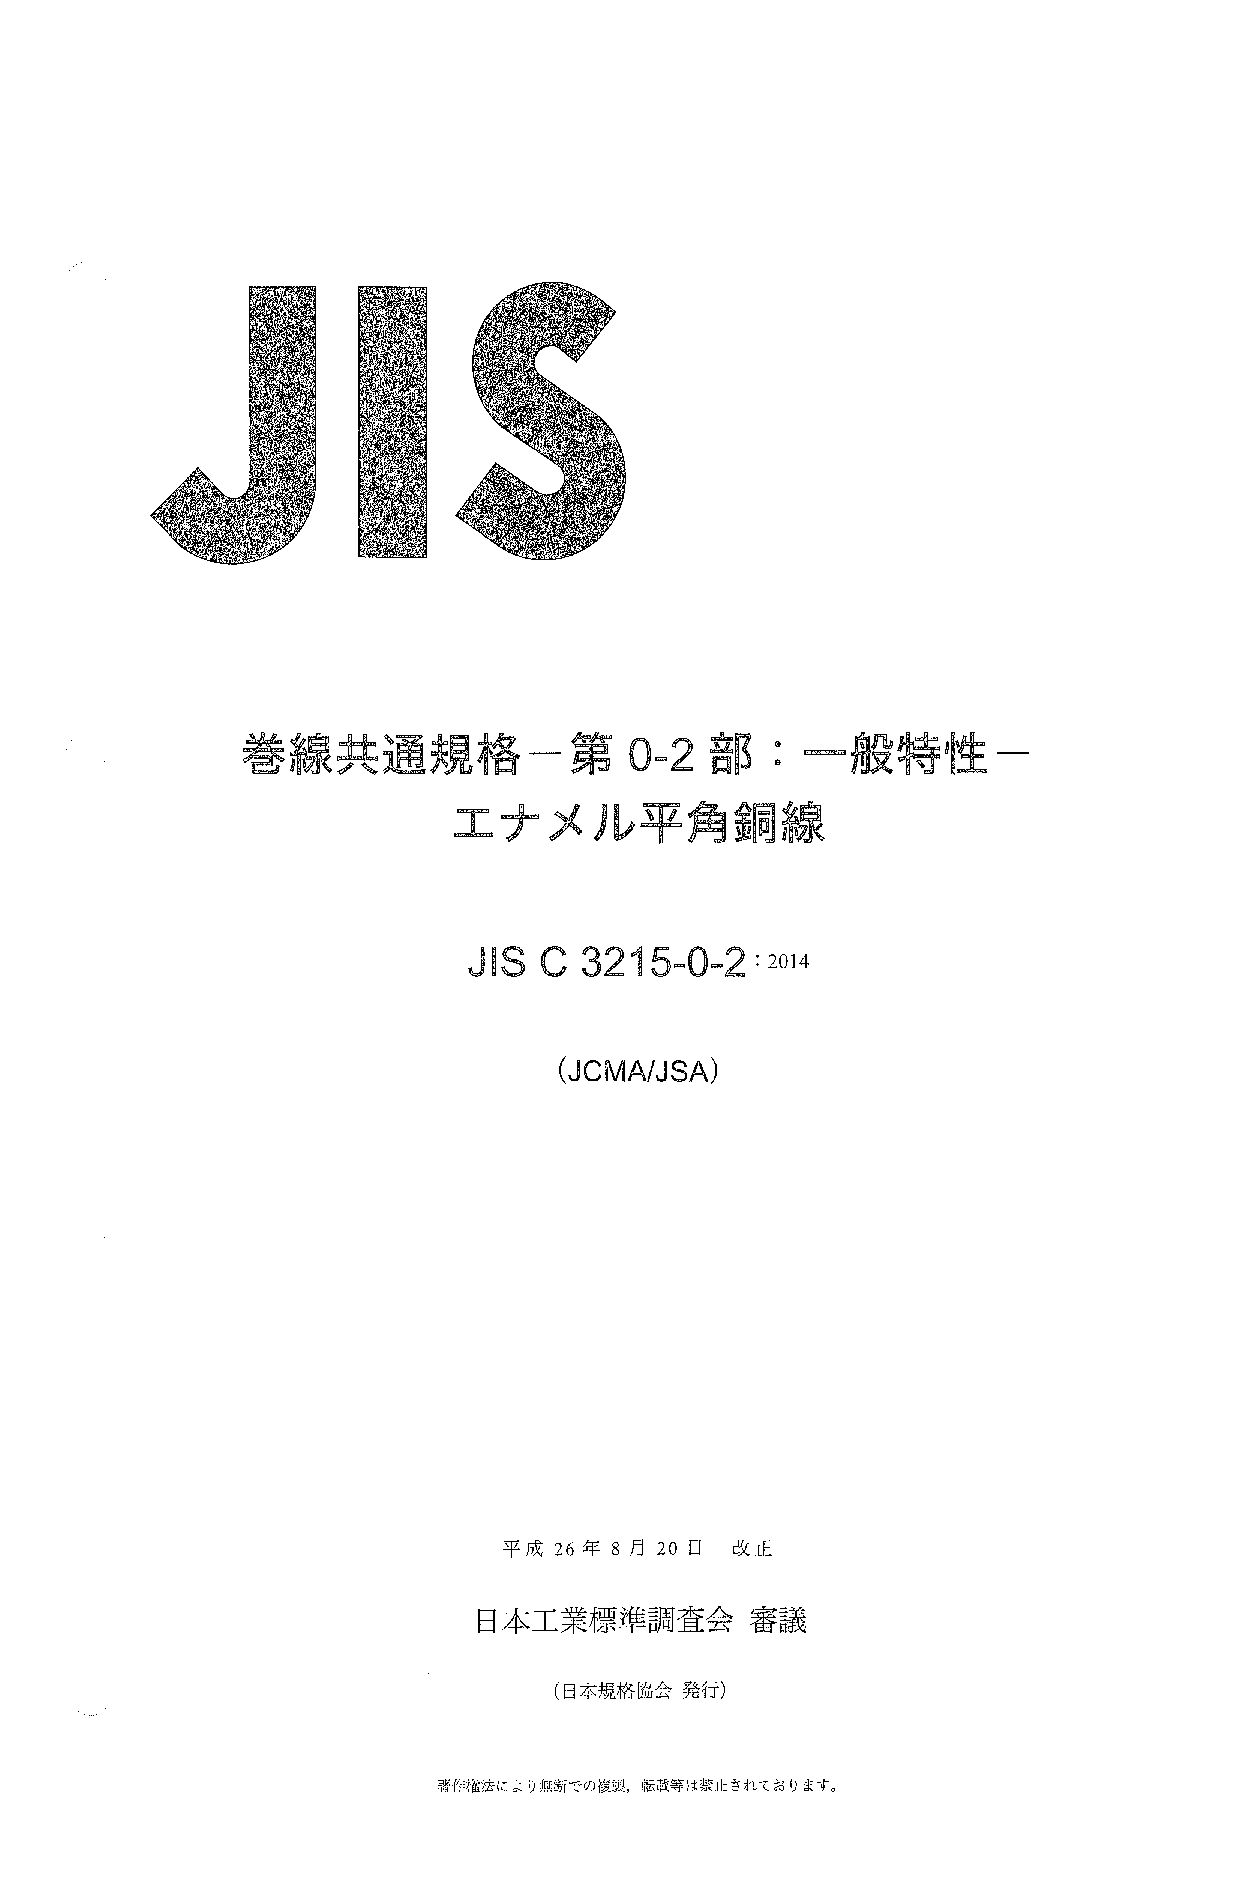 JIS C 3215-0-2:2014